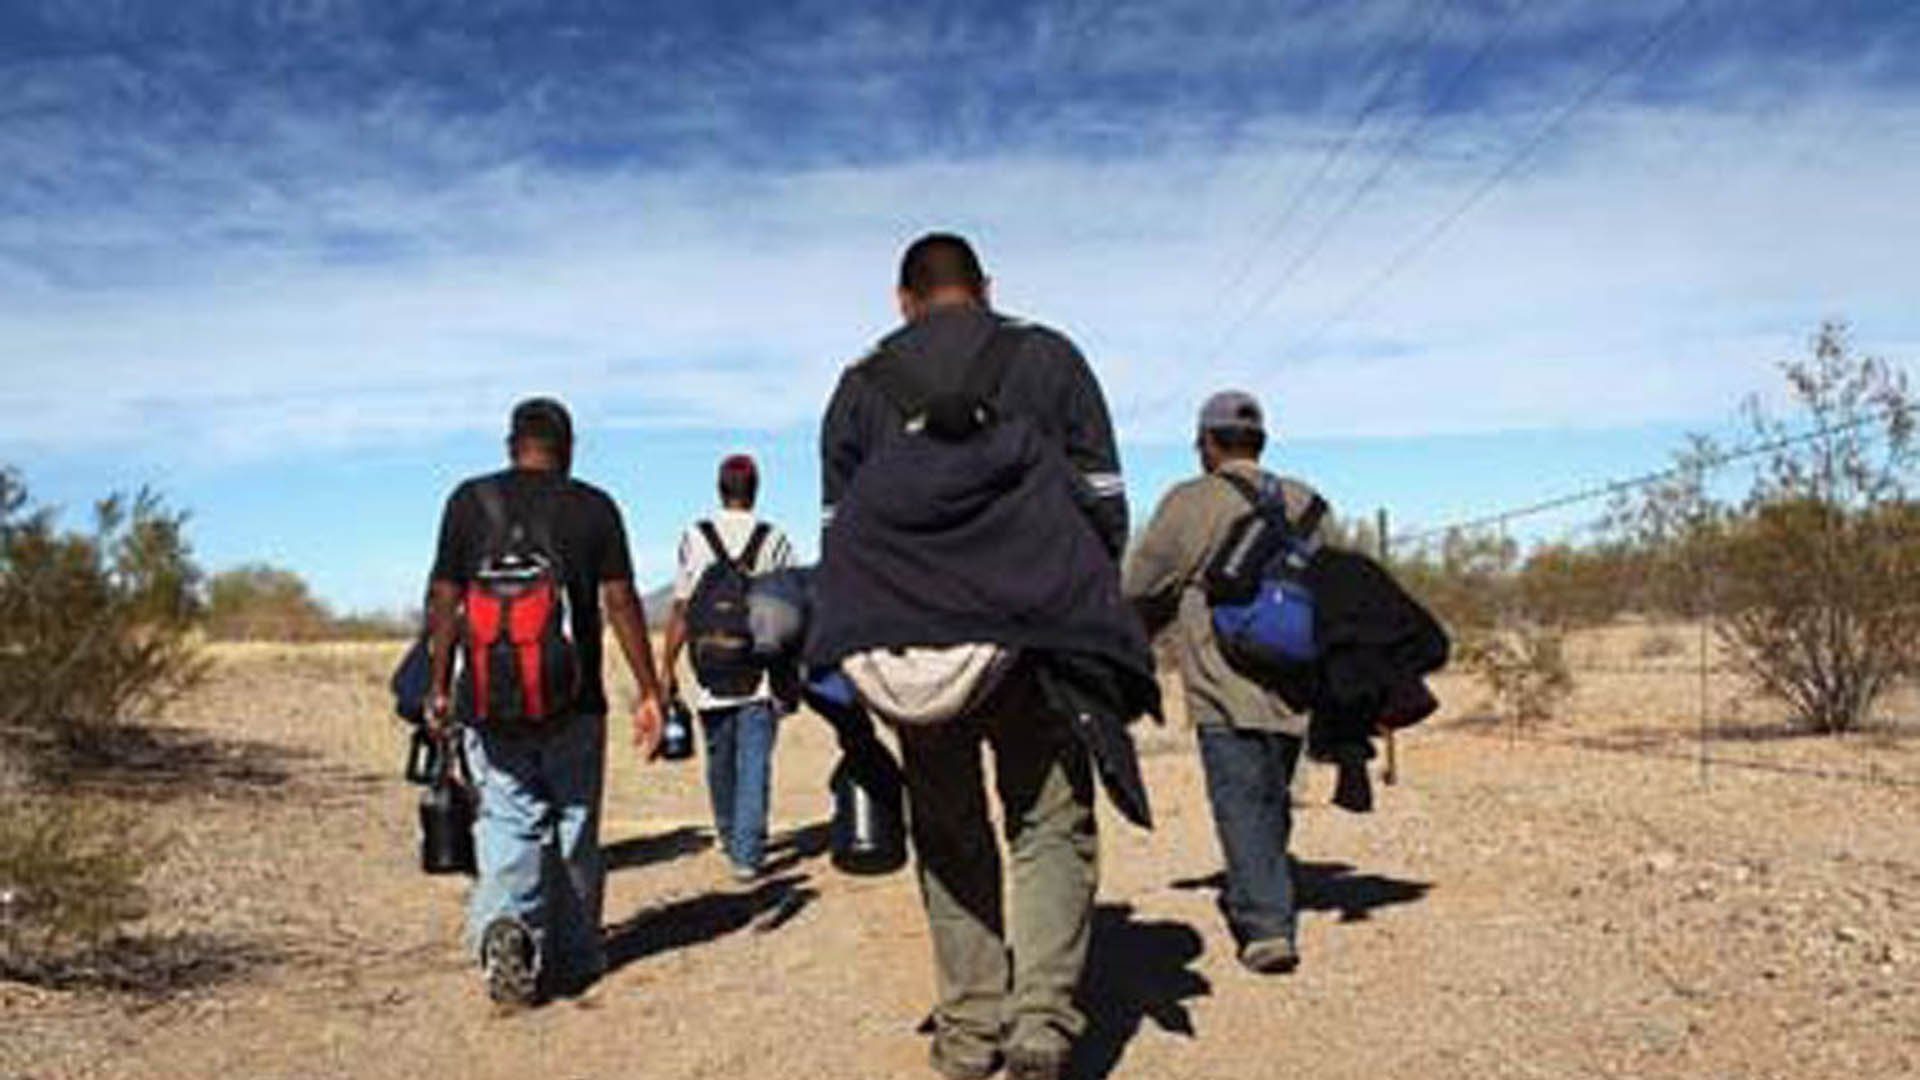 México asegura su frontera ante llegada de caravana migrante